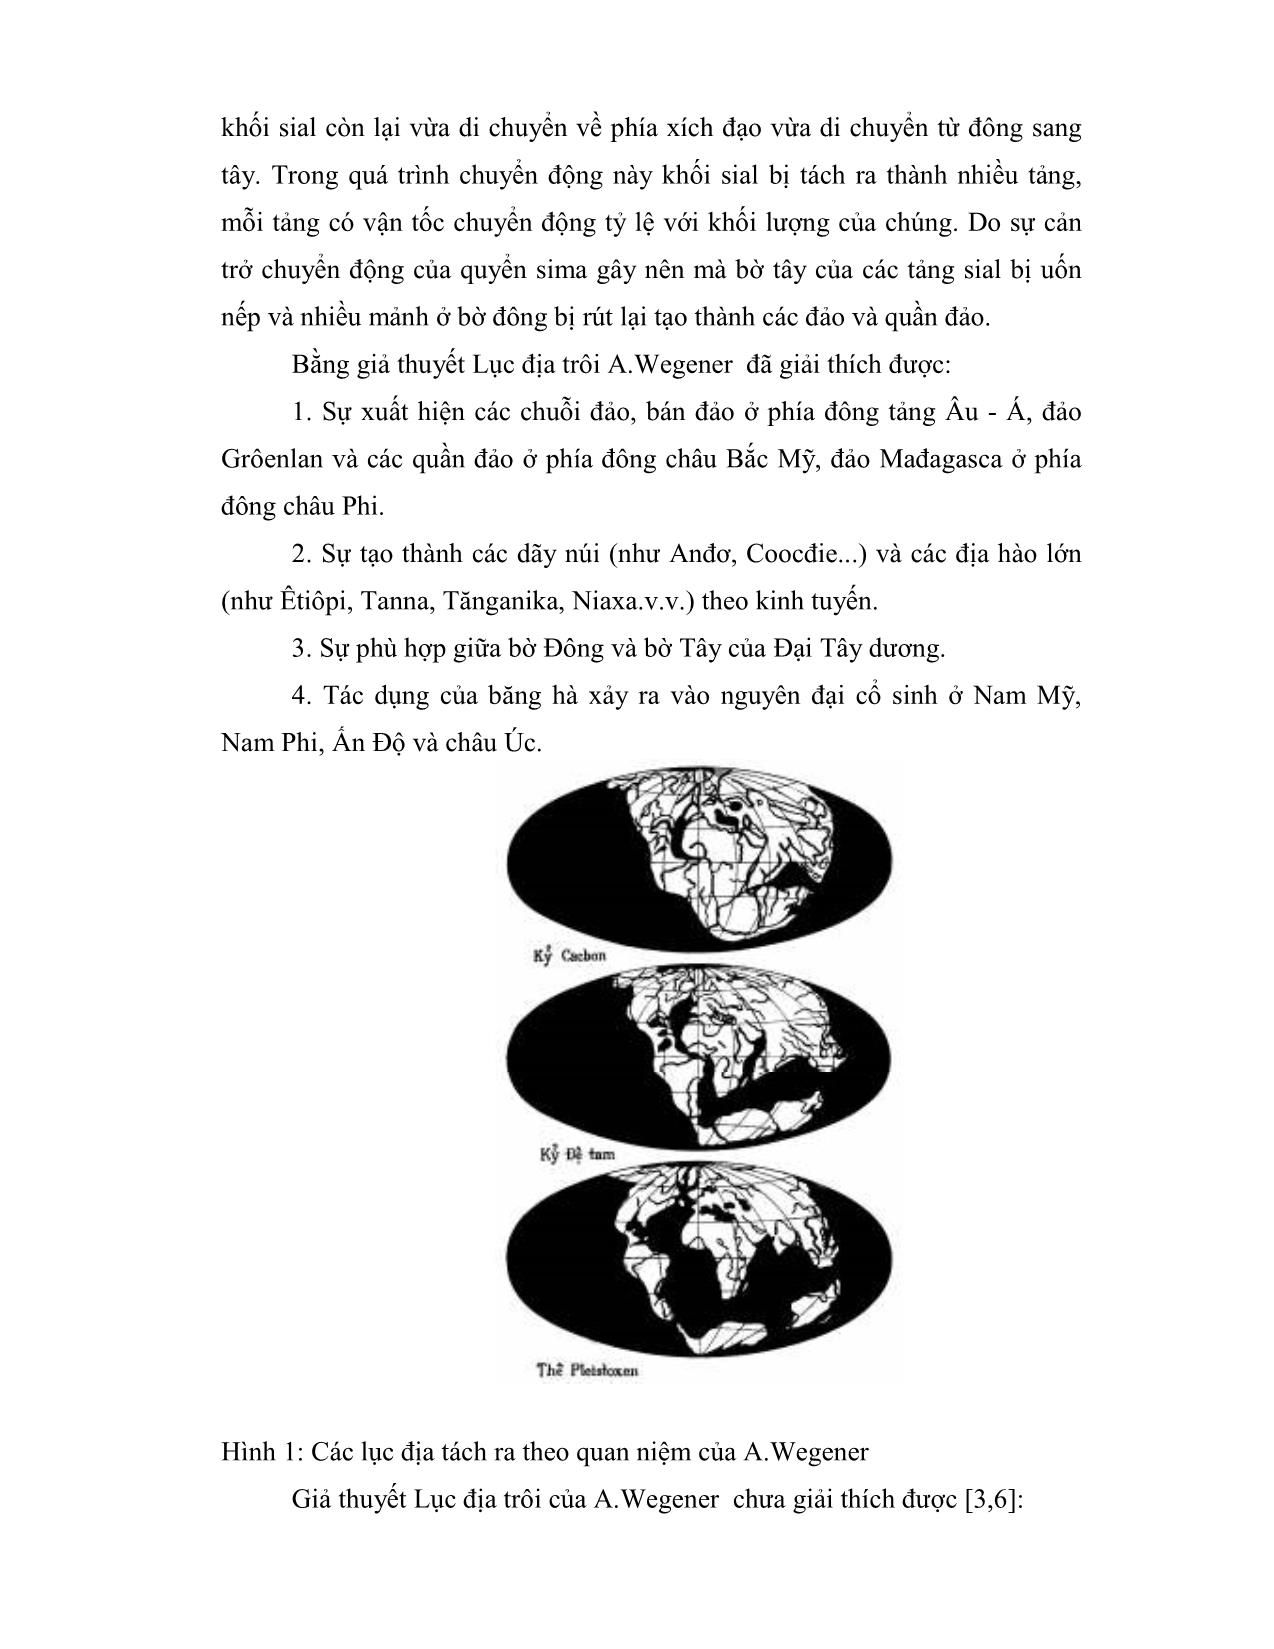 Thuyết lục địa trôi của A.Wegenervĩ đại và thuyết kiến tạo mảng hiện đại trang 3